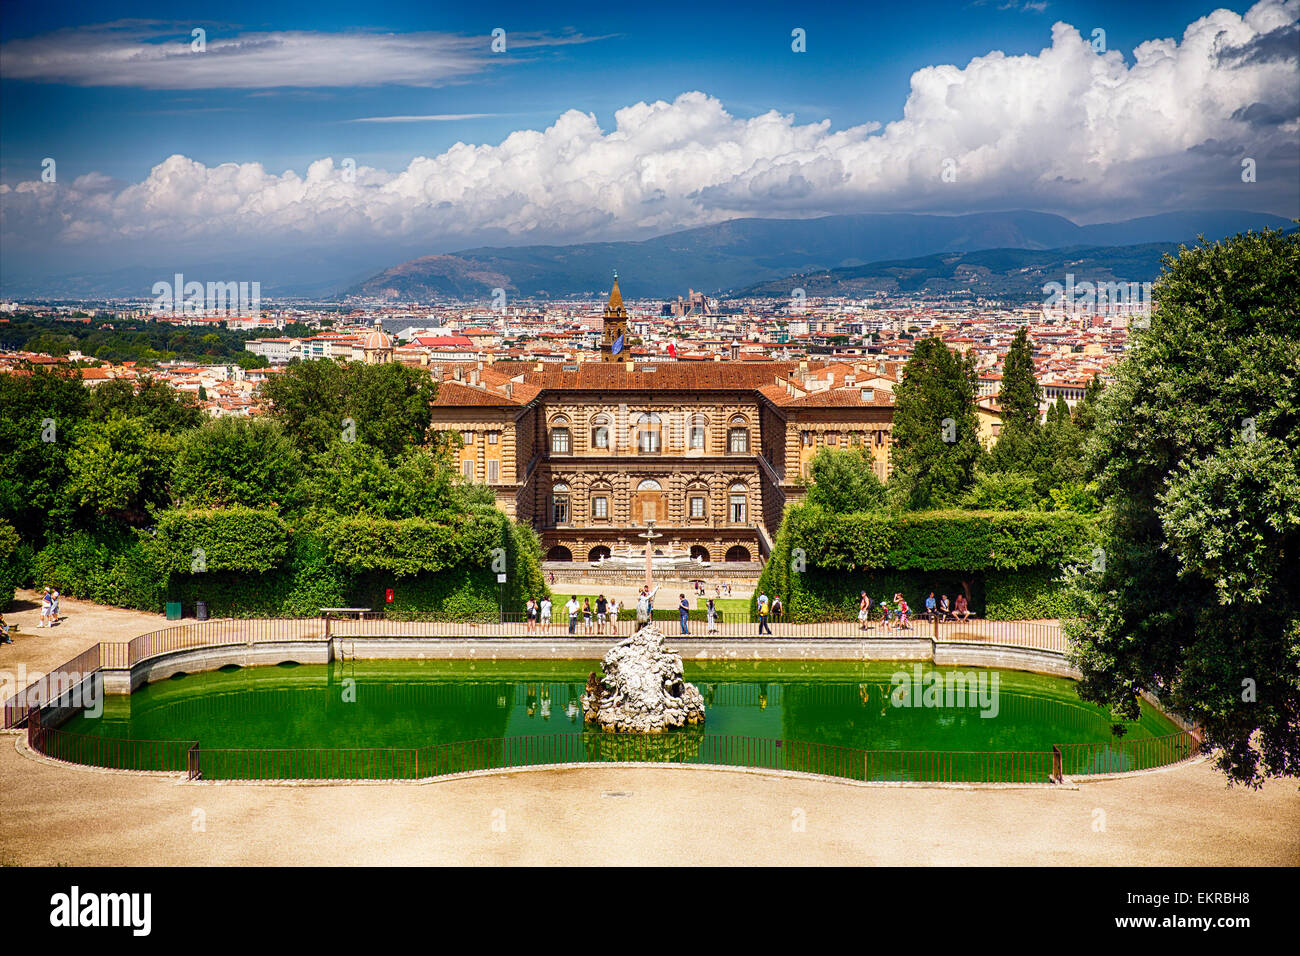 Portrait de l'arrière du palais Pitti avec le Jardin de Boboli et une fontaine, Florence, Toscane, Italie Banque D'Images